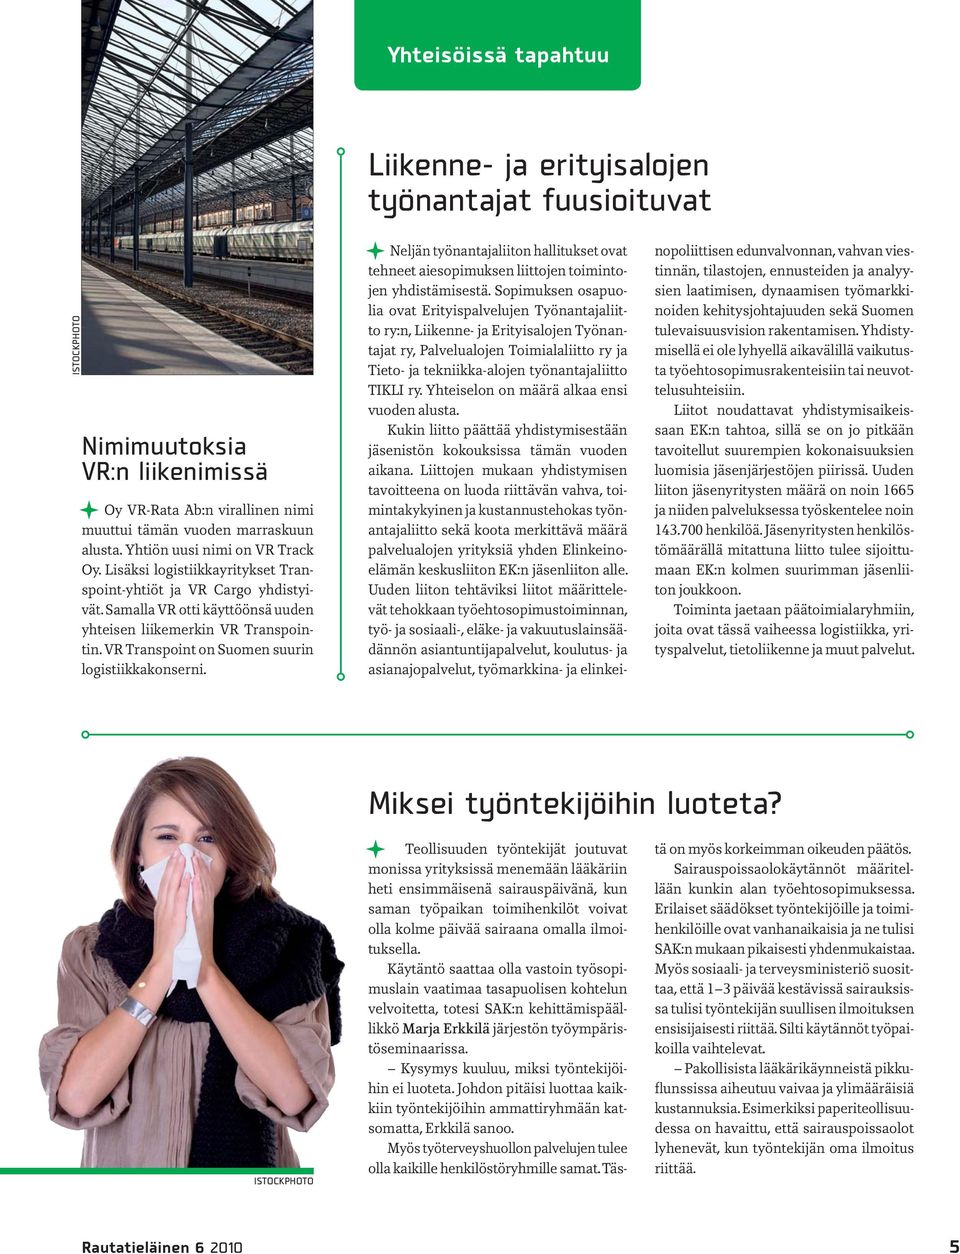 VR Transpoint on Suomen suurin logistiikkakonserni. Neljän työnantajaliiton hallitukset ovat tehneet aiesopimuksen liittojen toimintojen yhdistämisestä.